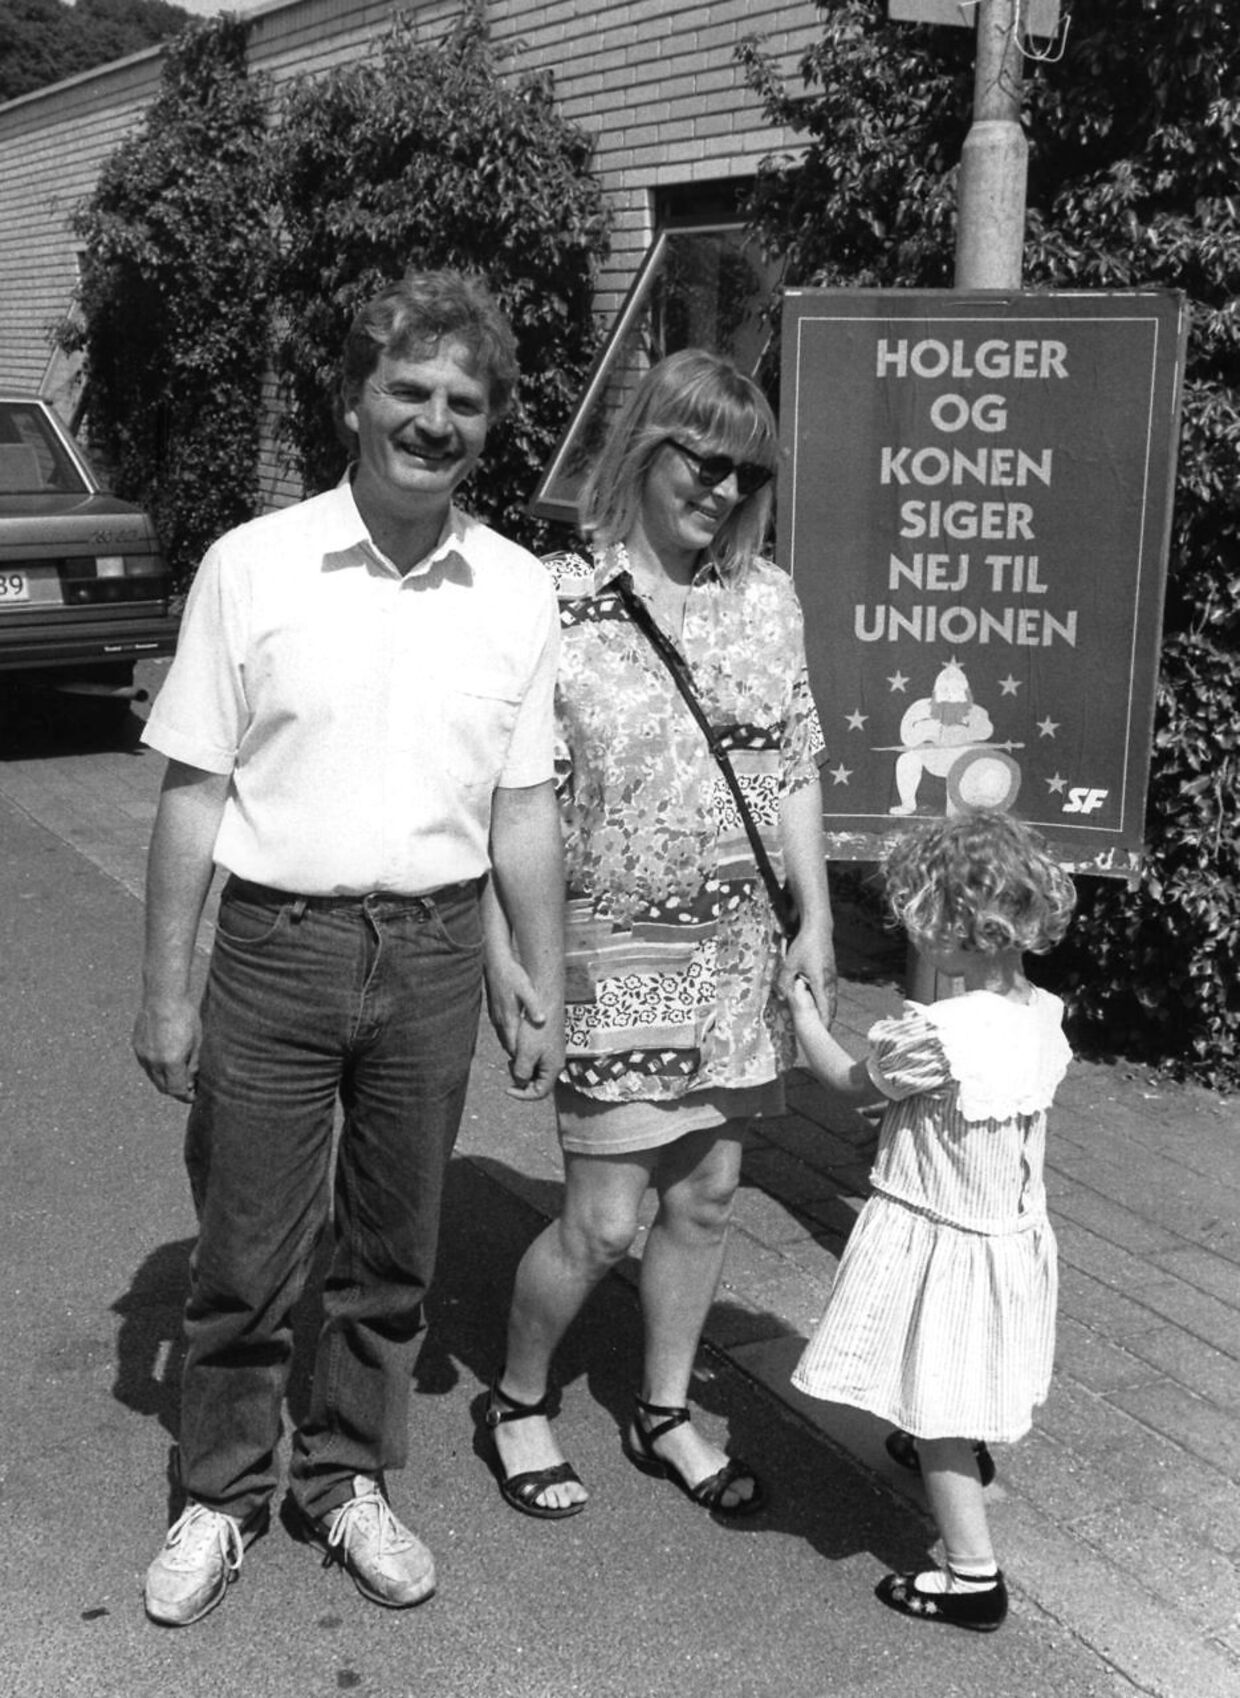 Holger K Nielsen med Kirsten og Ida på fire år, foran en plakat med teksten: Holger og konen siger nej til Unionen, ved et afstemningssted i Jonstrup, den 2. juni 1992.